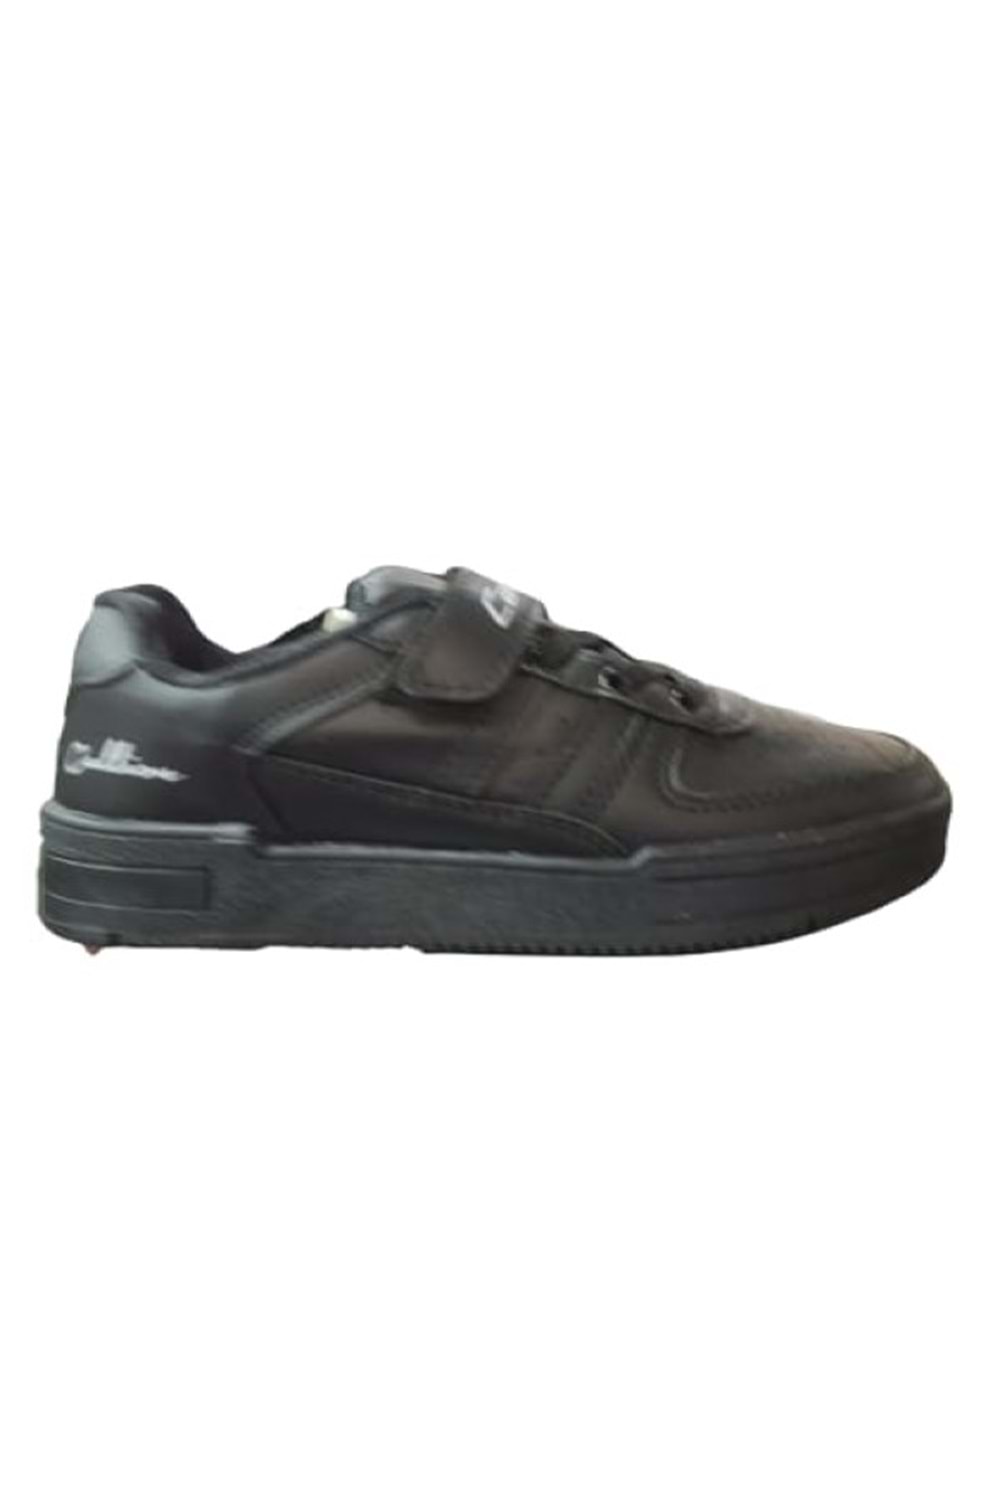 Callion Çocuk Erkek Cırtlı Bağcıklı Sneakers Spor Ayakkabı C-00235 - Siyah